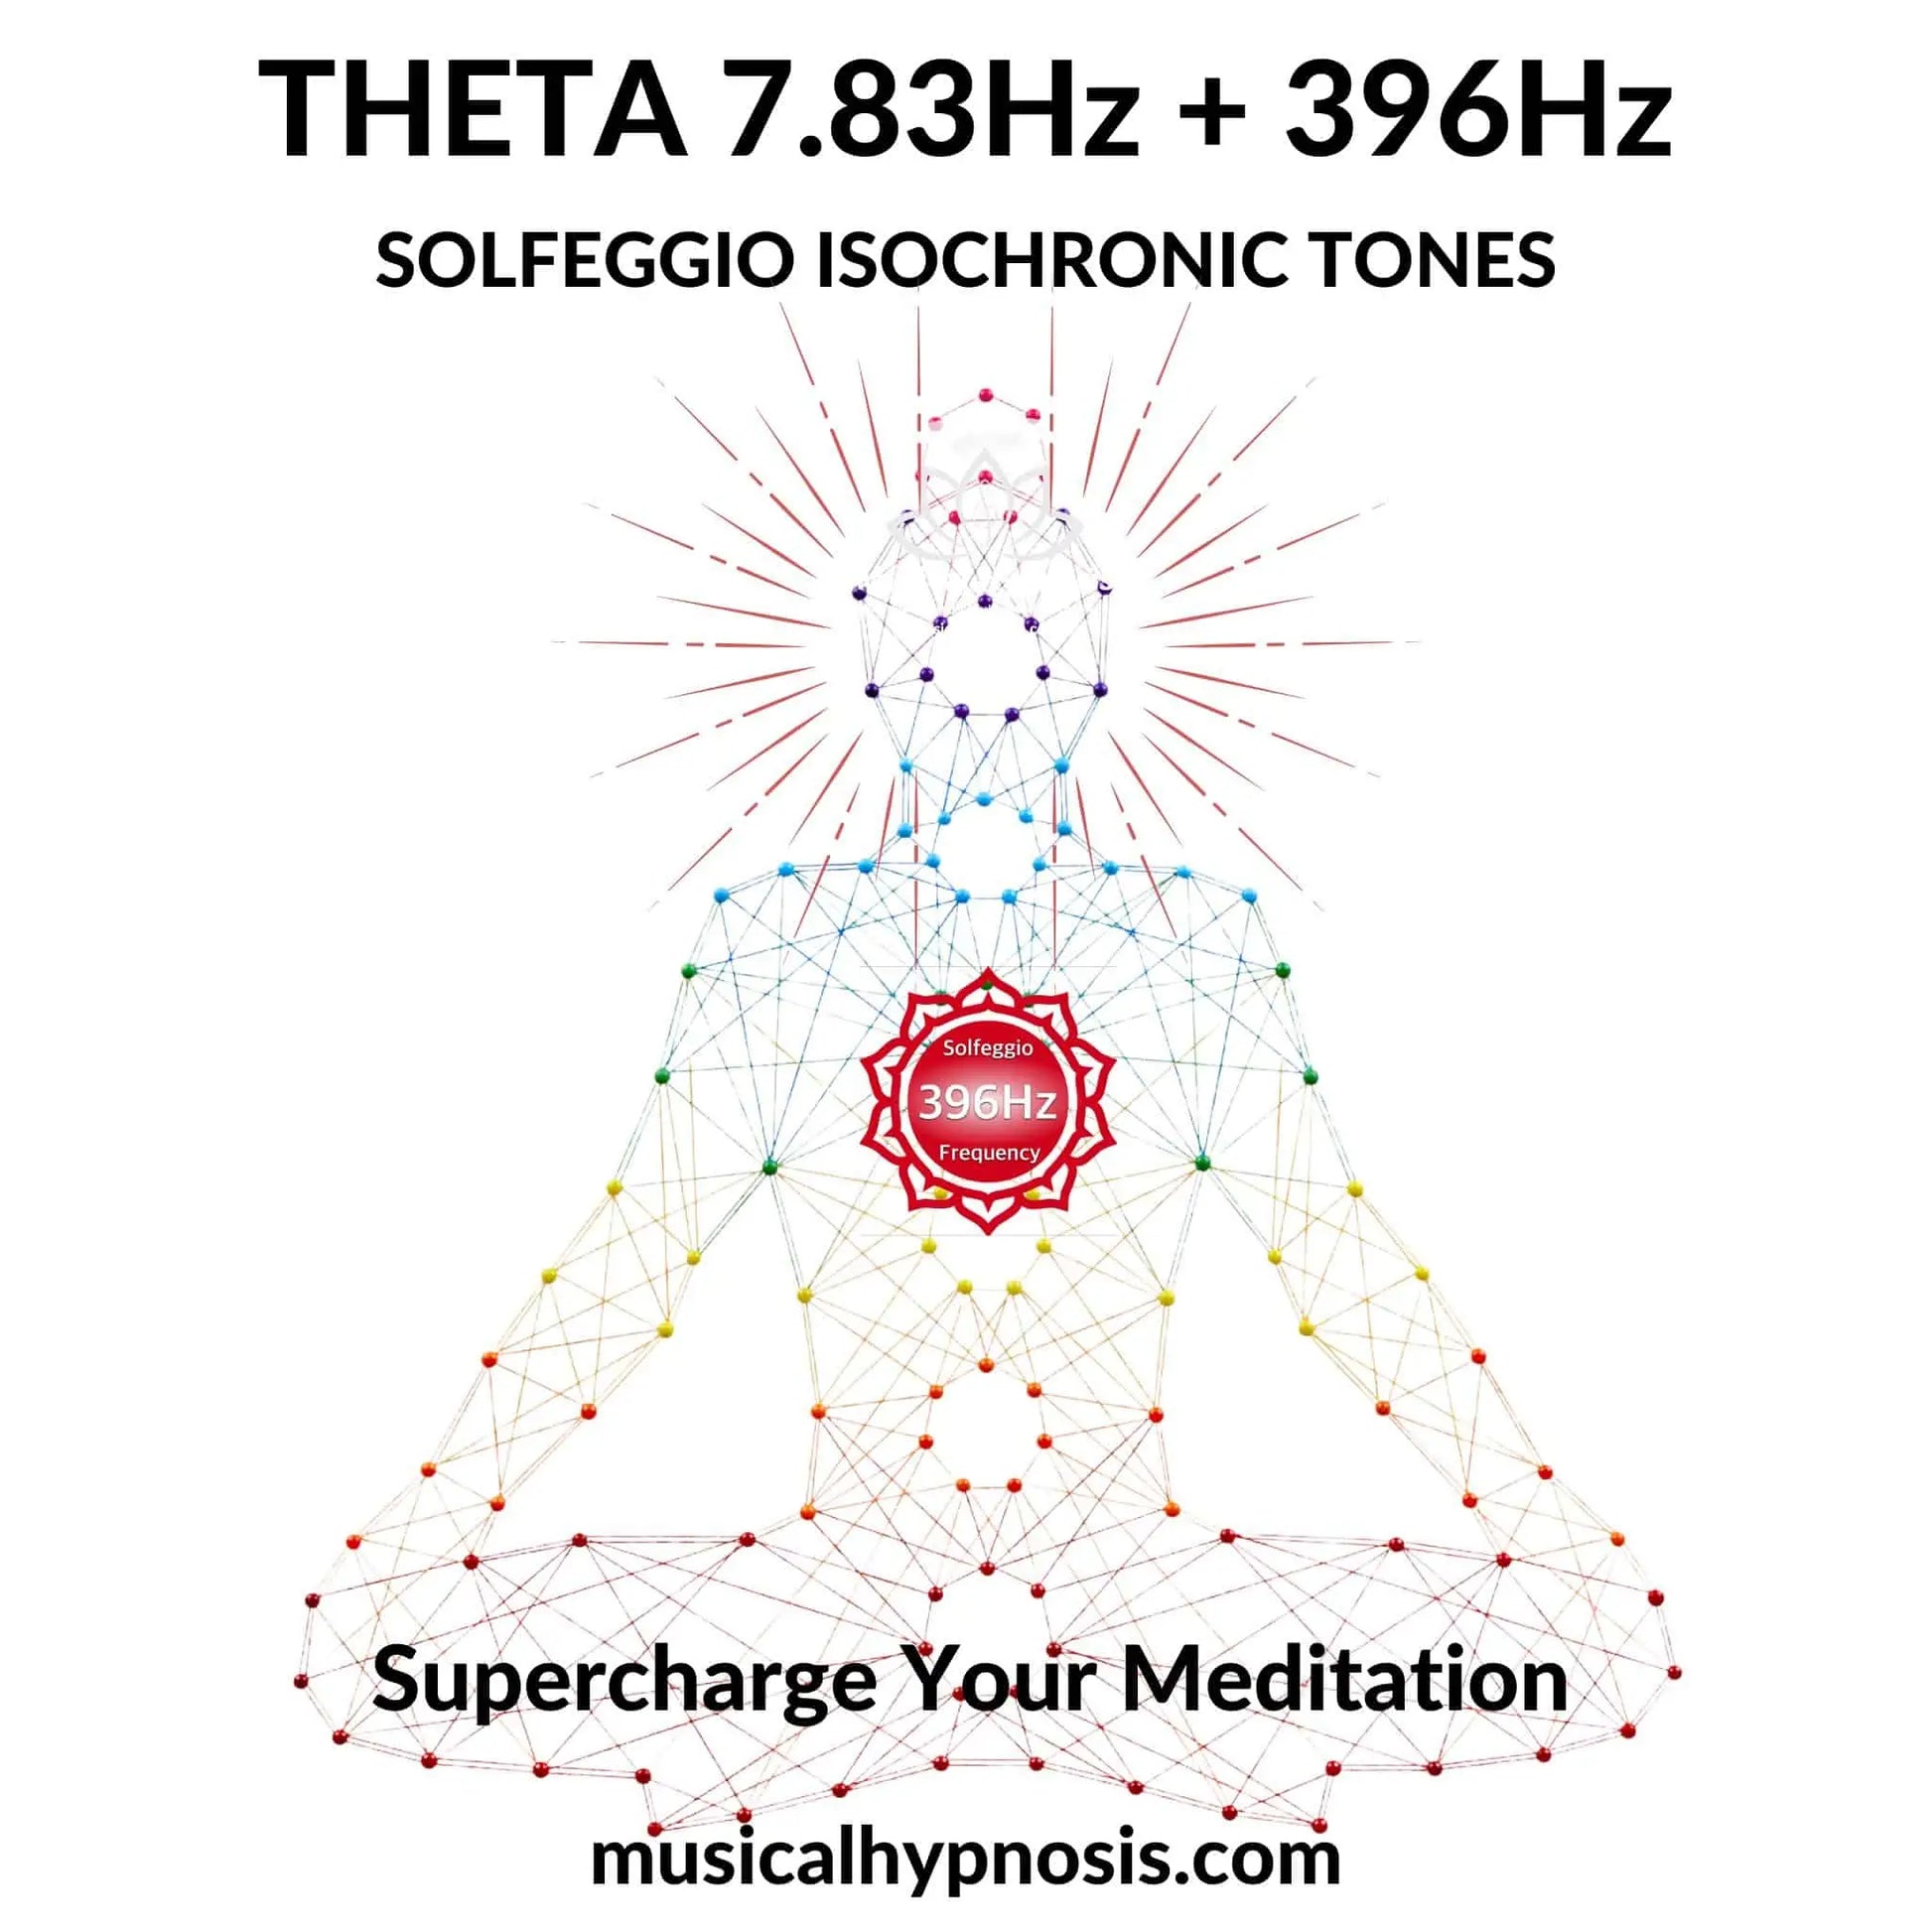 Theta 7.83Hz and 396Hz Solfeggio Isochronic Tones | 30 minutes